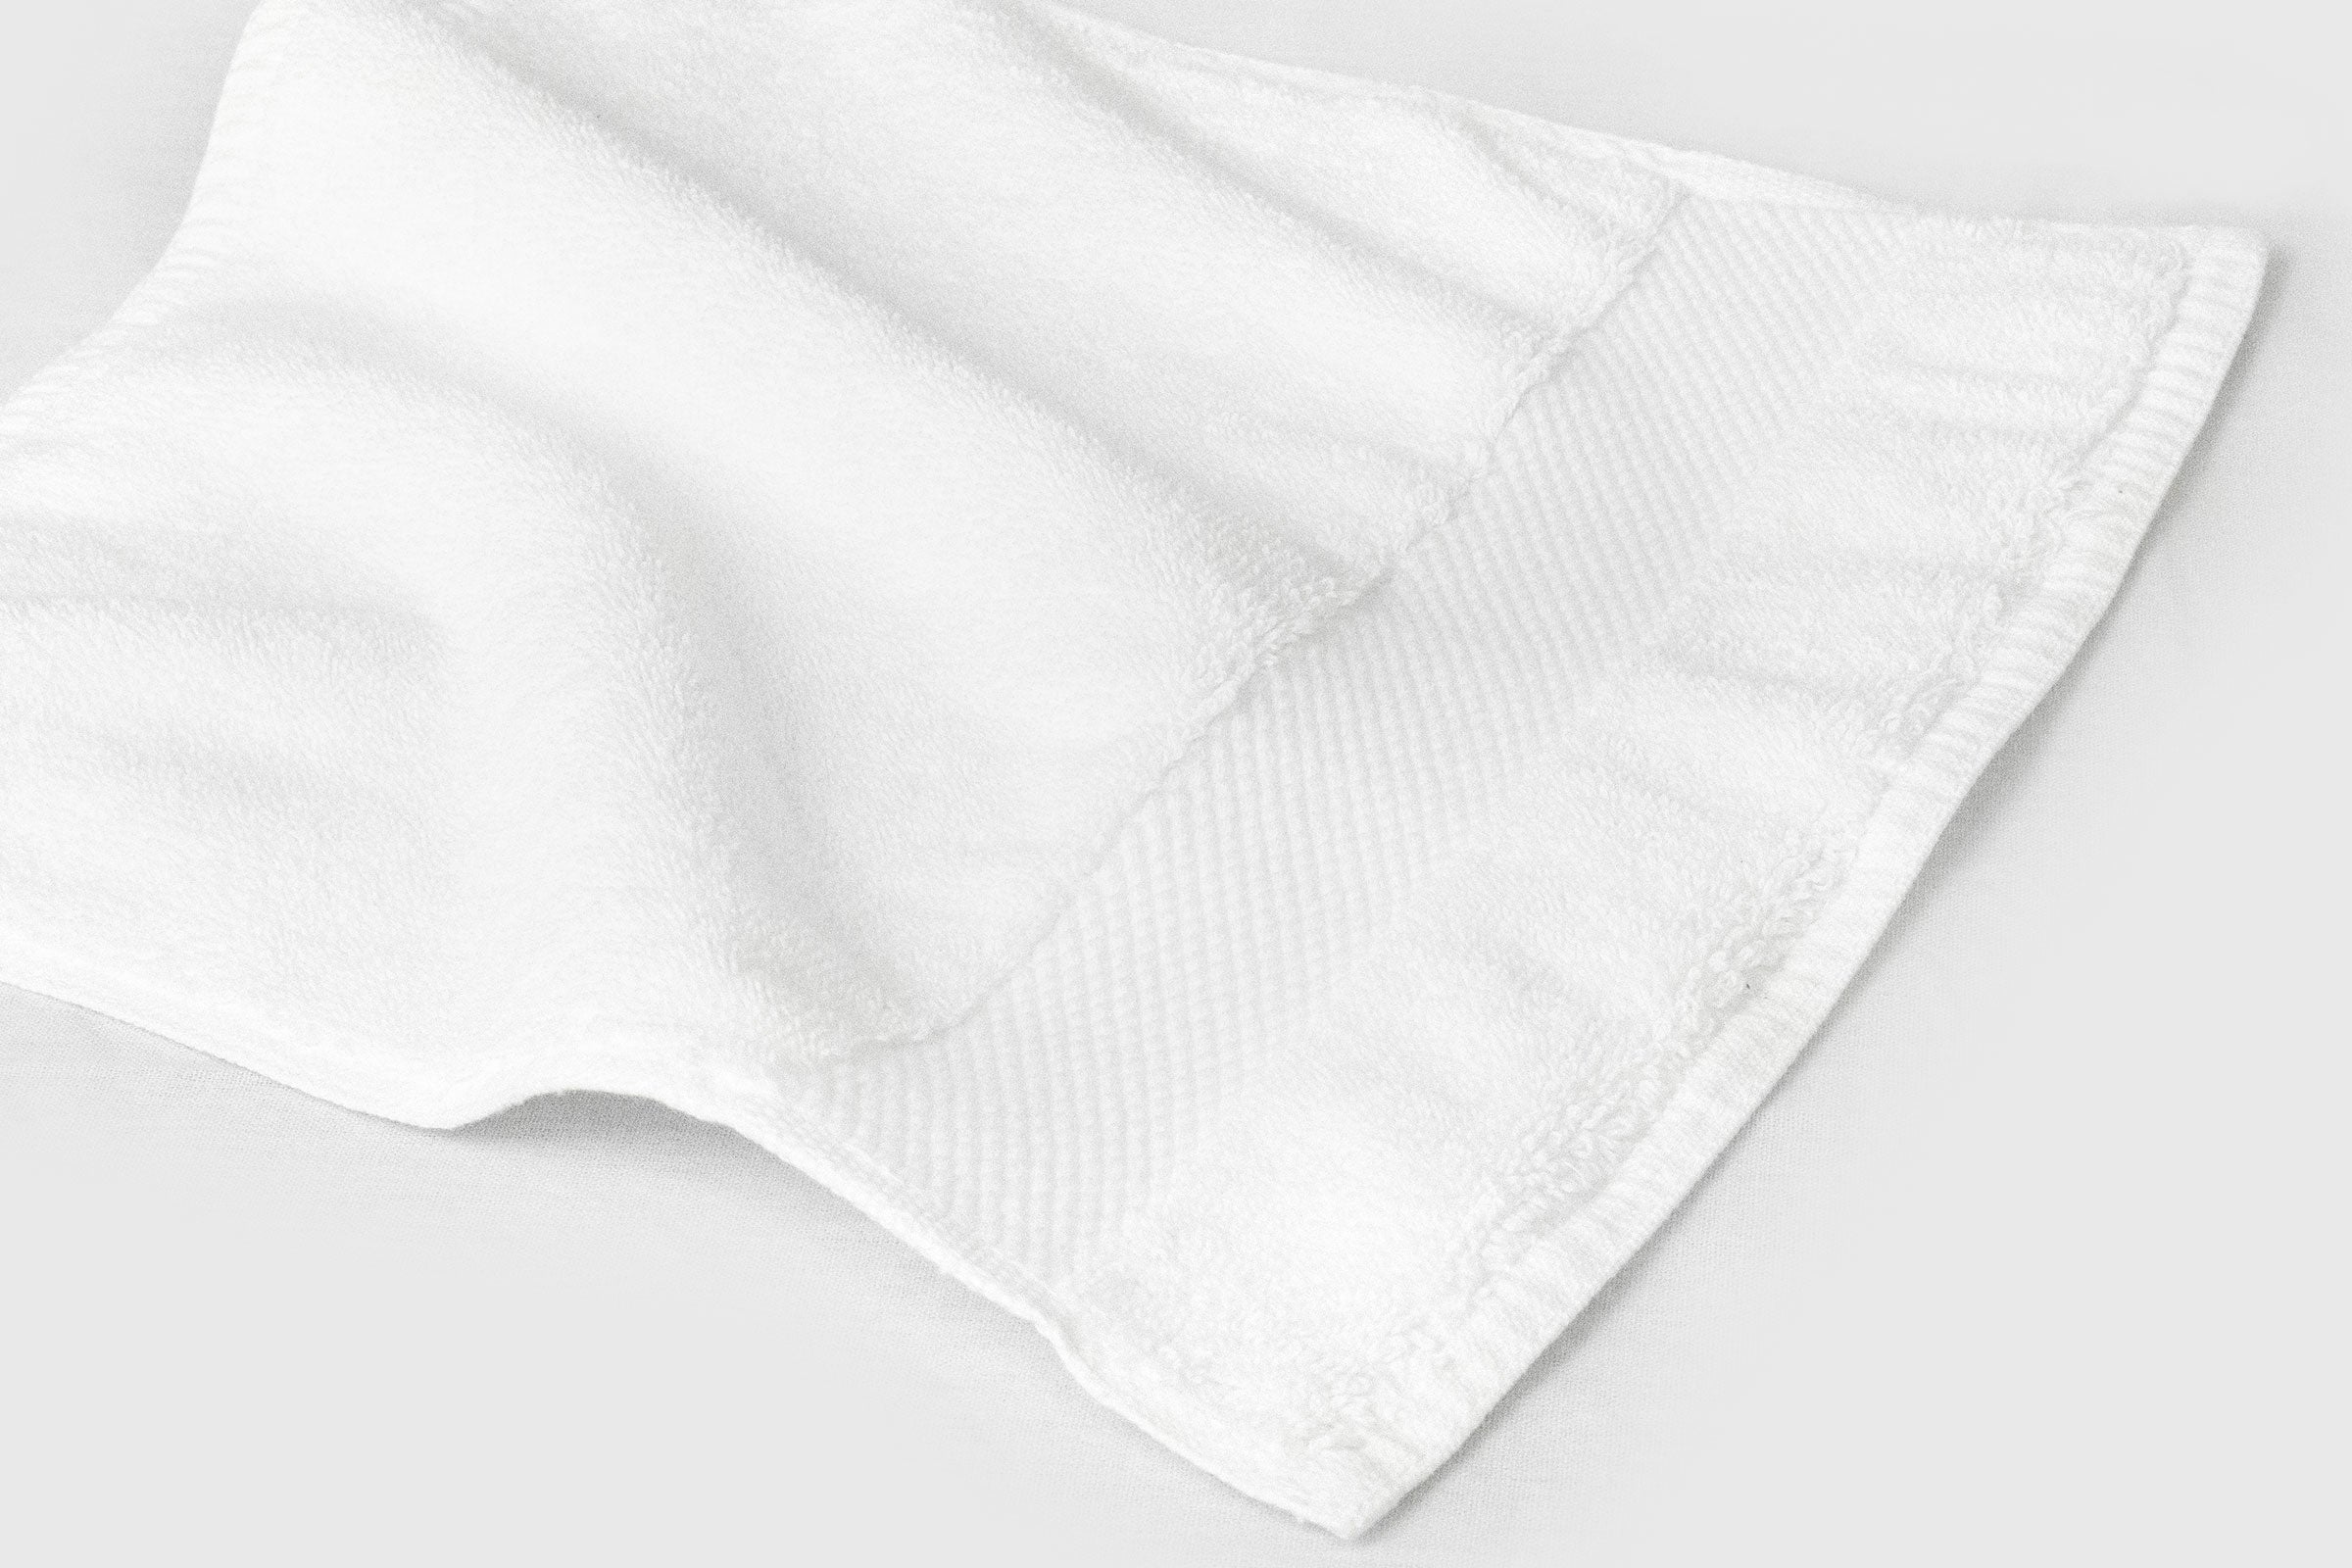 white-organic-face-towel-pair-detail-shot-by-sojao.jpg